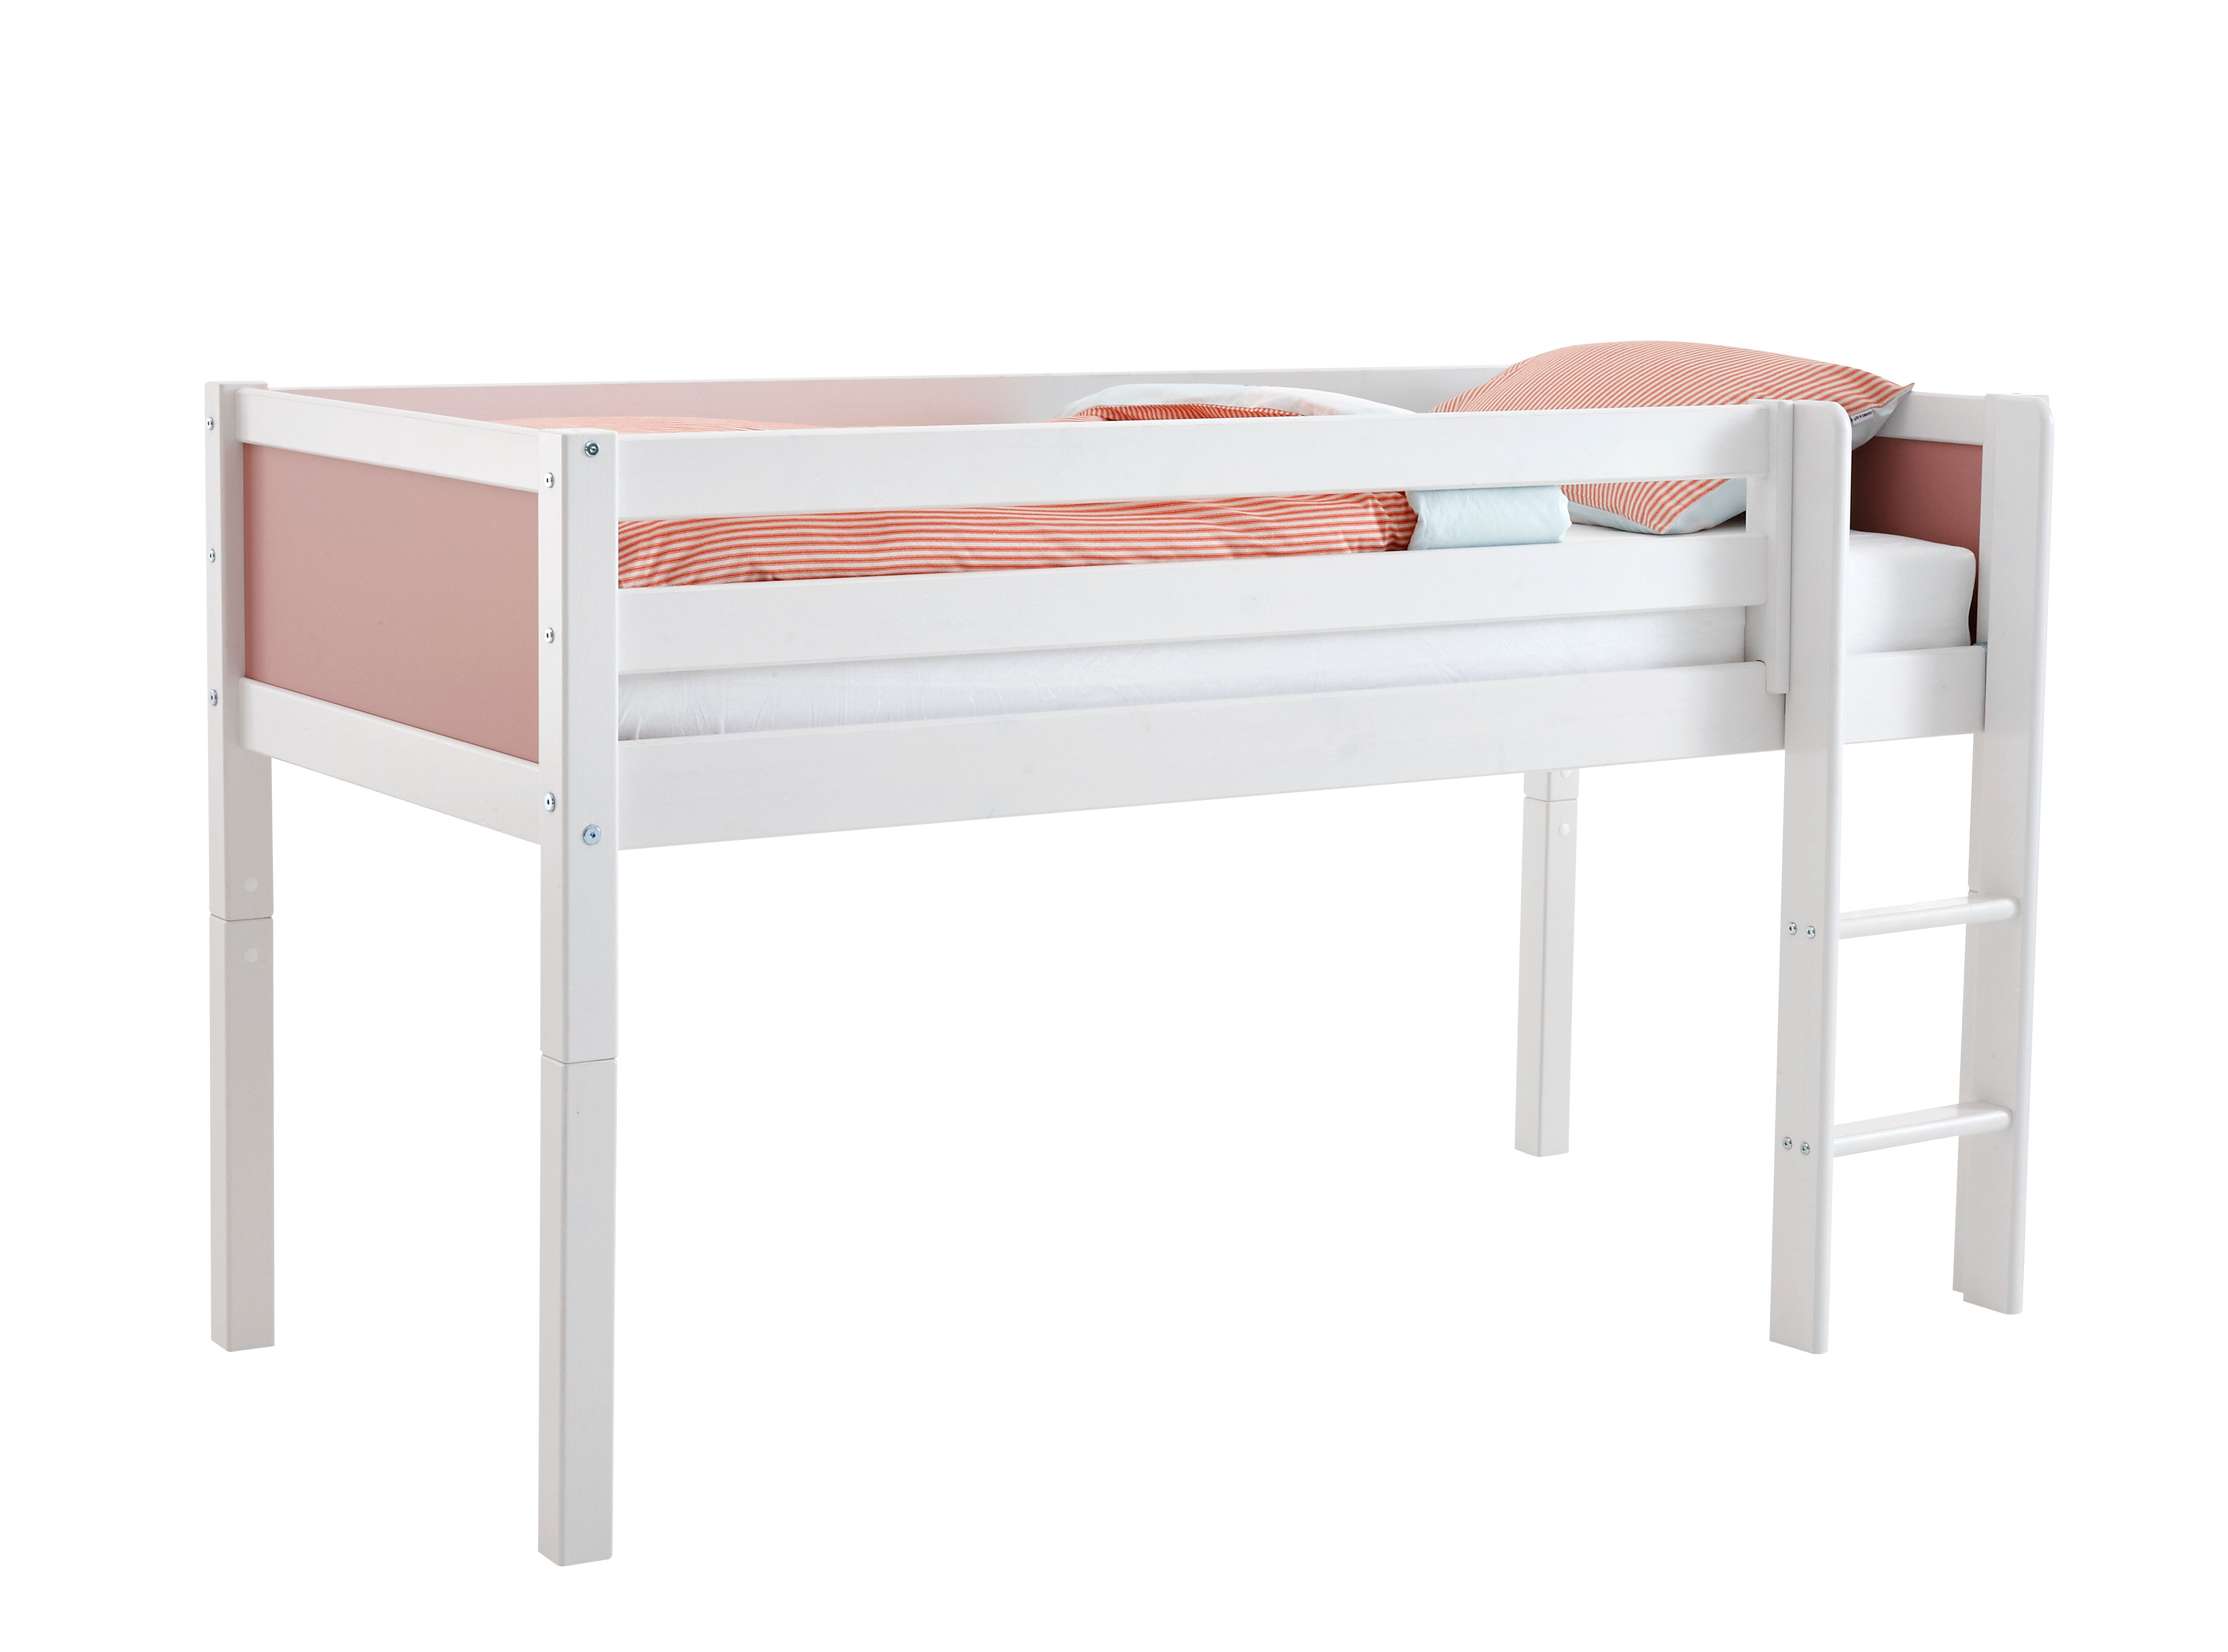 Flexa Basic Nordic barneseng halvhøy seng 90x200 cm, rosa, hvit.